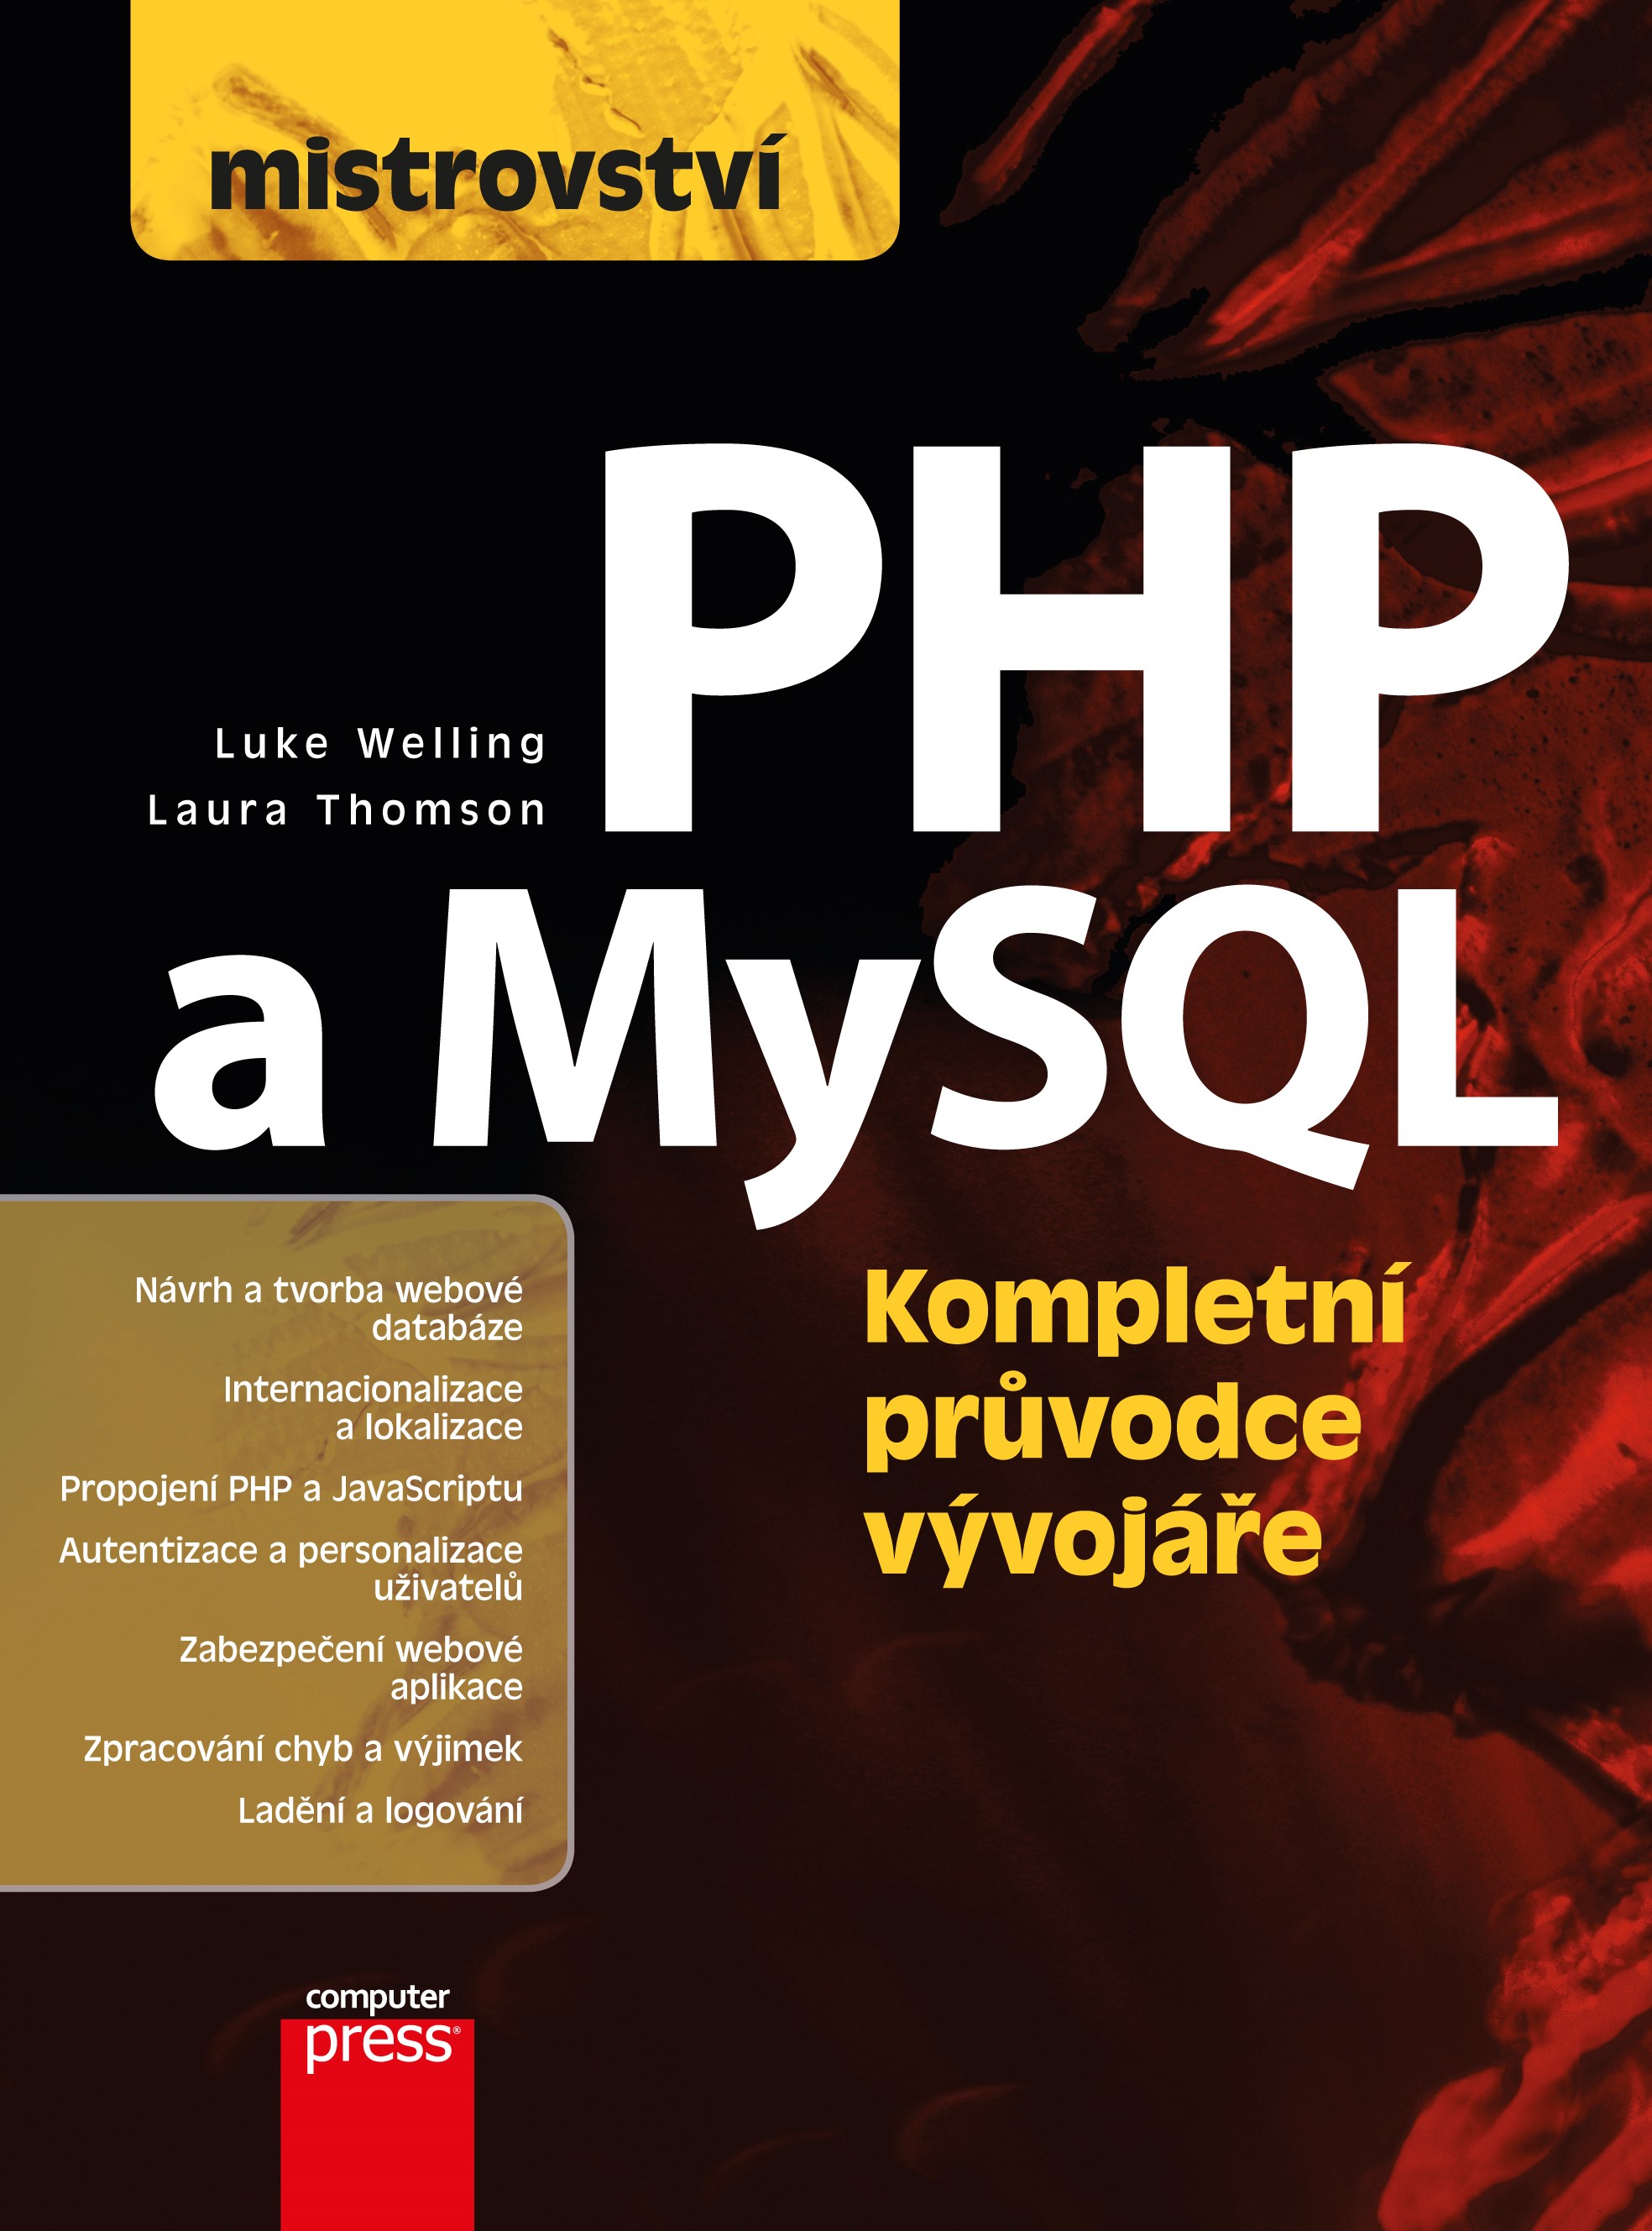 MISTROVSTVÍ - PHP A MYSQL (KOMPLETNÍ PRŮVODCE VÝVOJÁŘE)